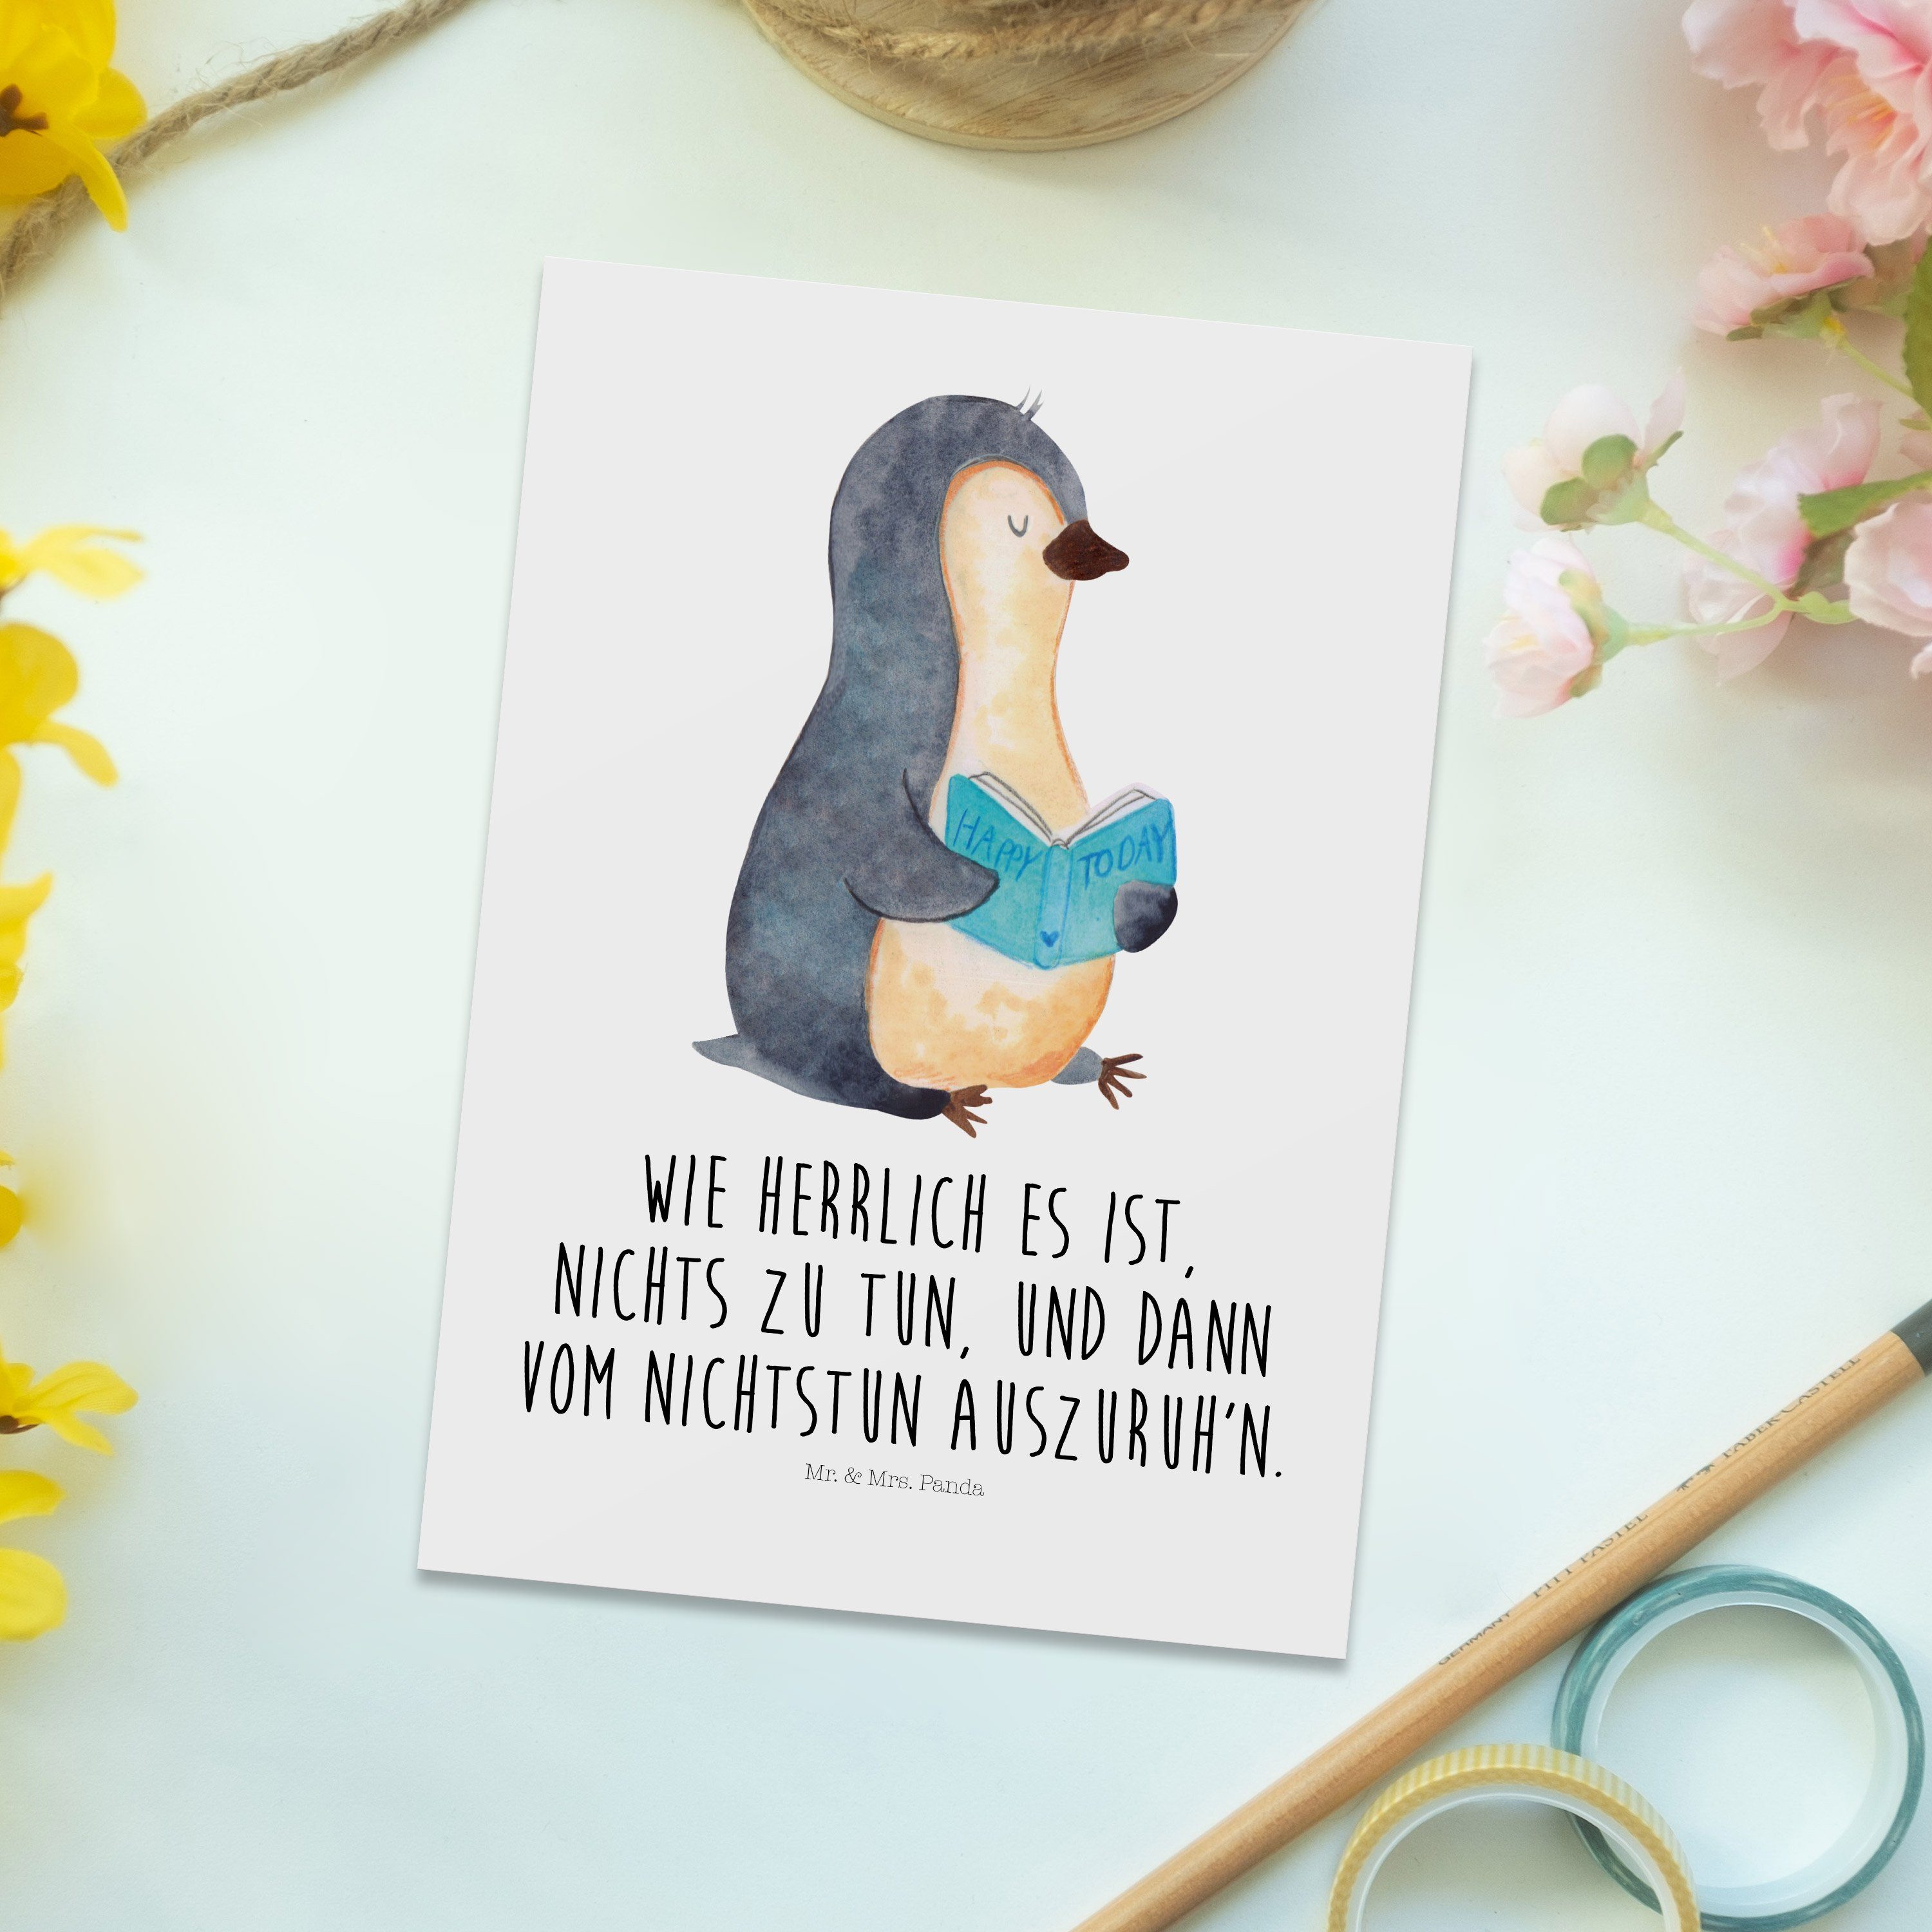 Mr. & Mrs. Panda Geschenk, Pinguin - Buch Postkarte Einladung, Bücherwurm, Weiß Geschenkkarte 